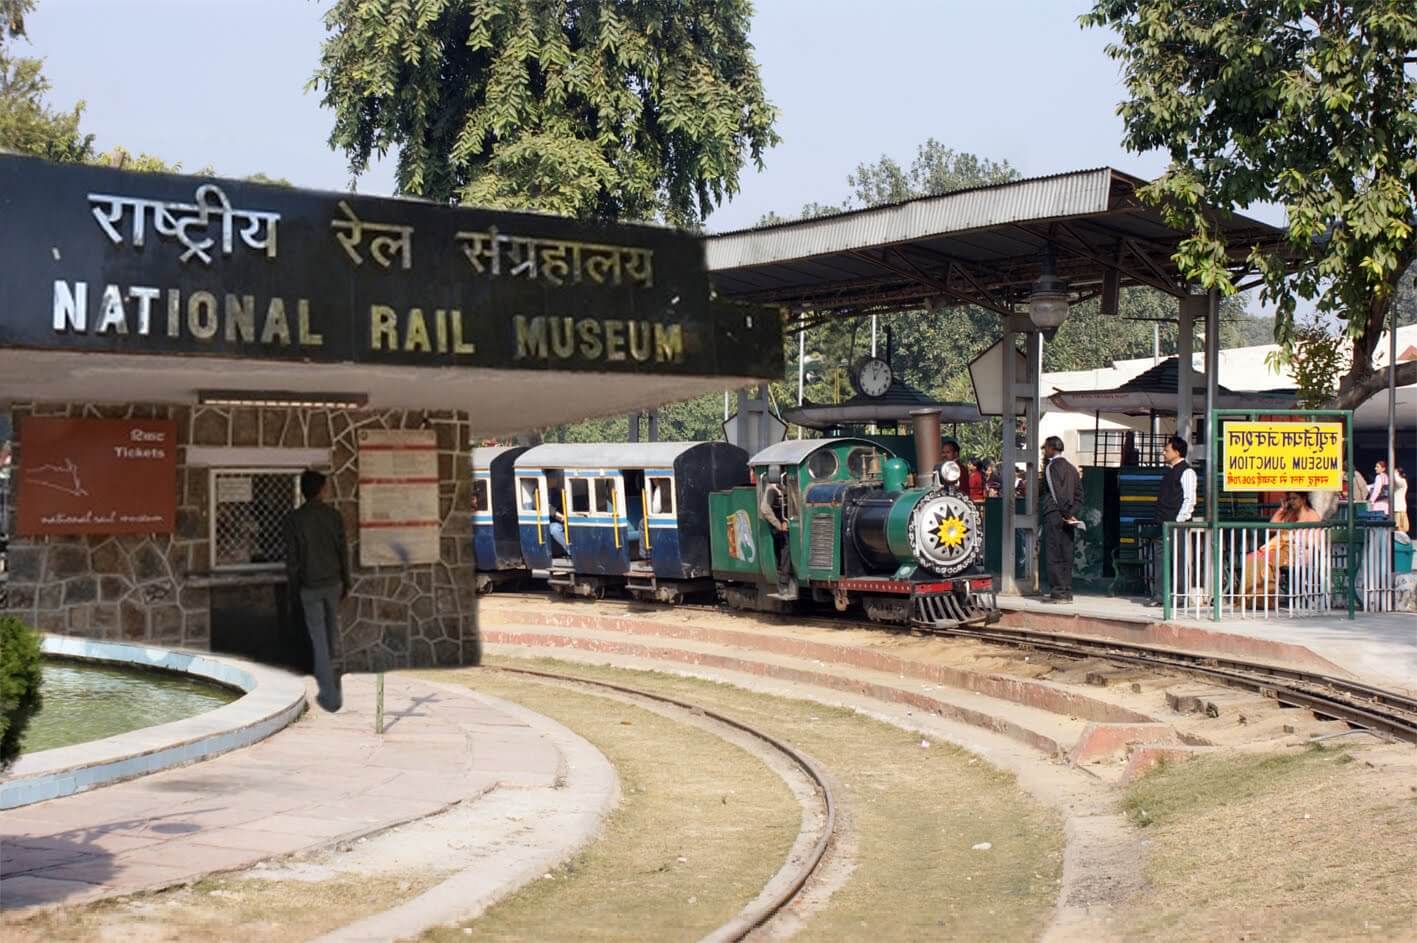 Museo Nacional del Ferrocarril, Delhi